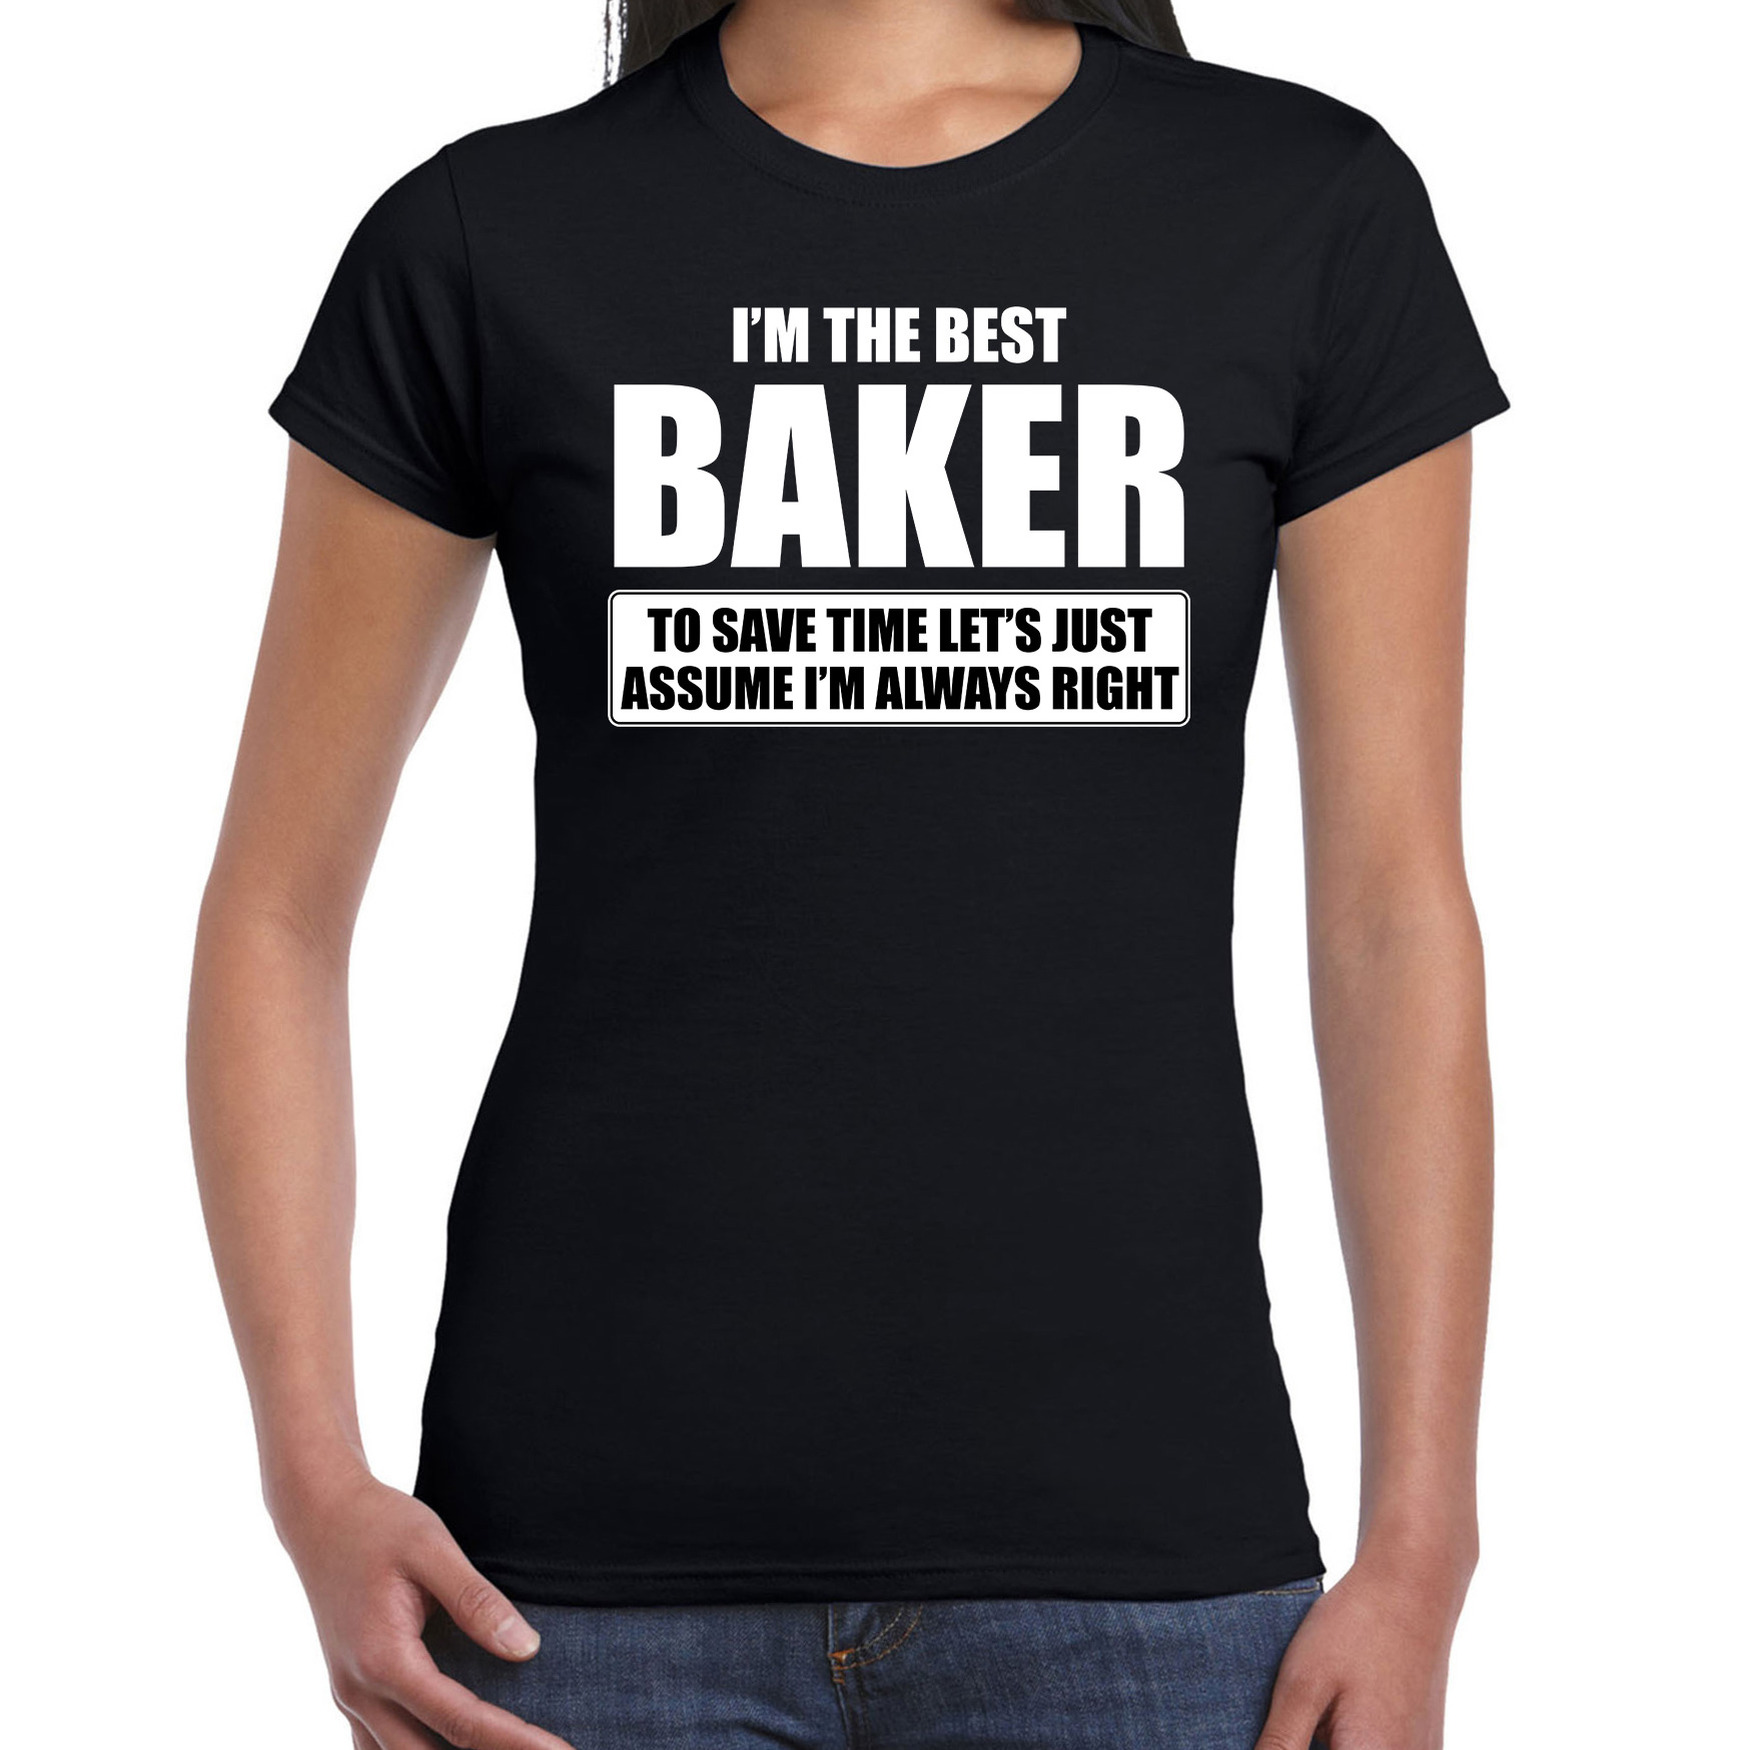 I'm the best baker t-shirt zwart dames De beste bakker cadeau